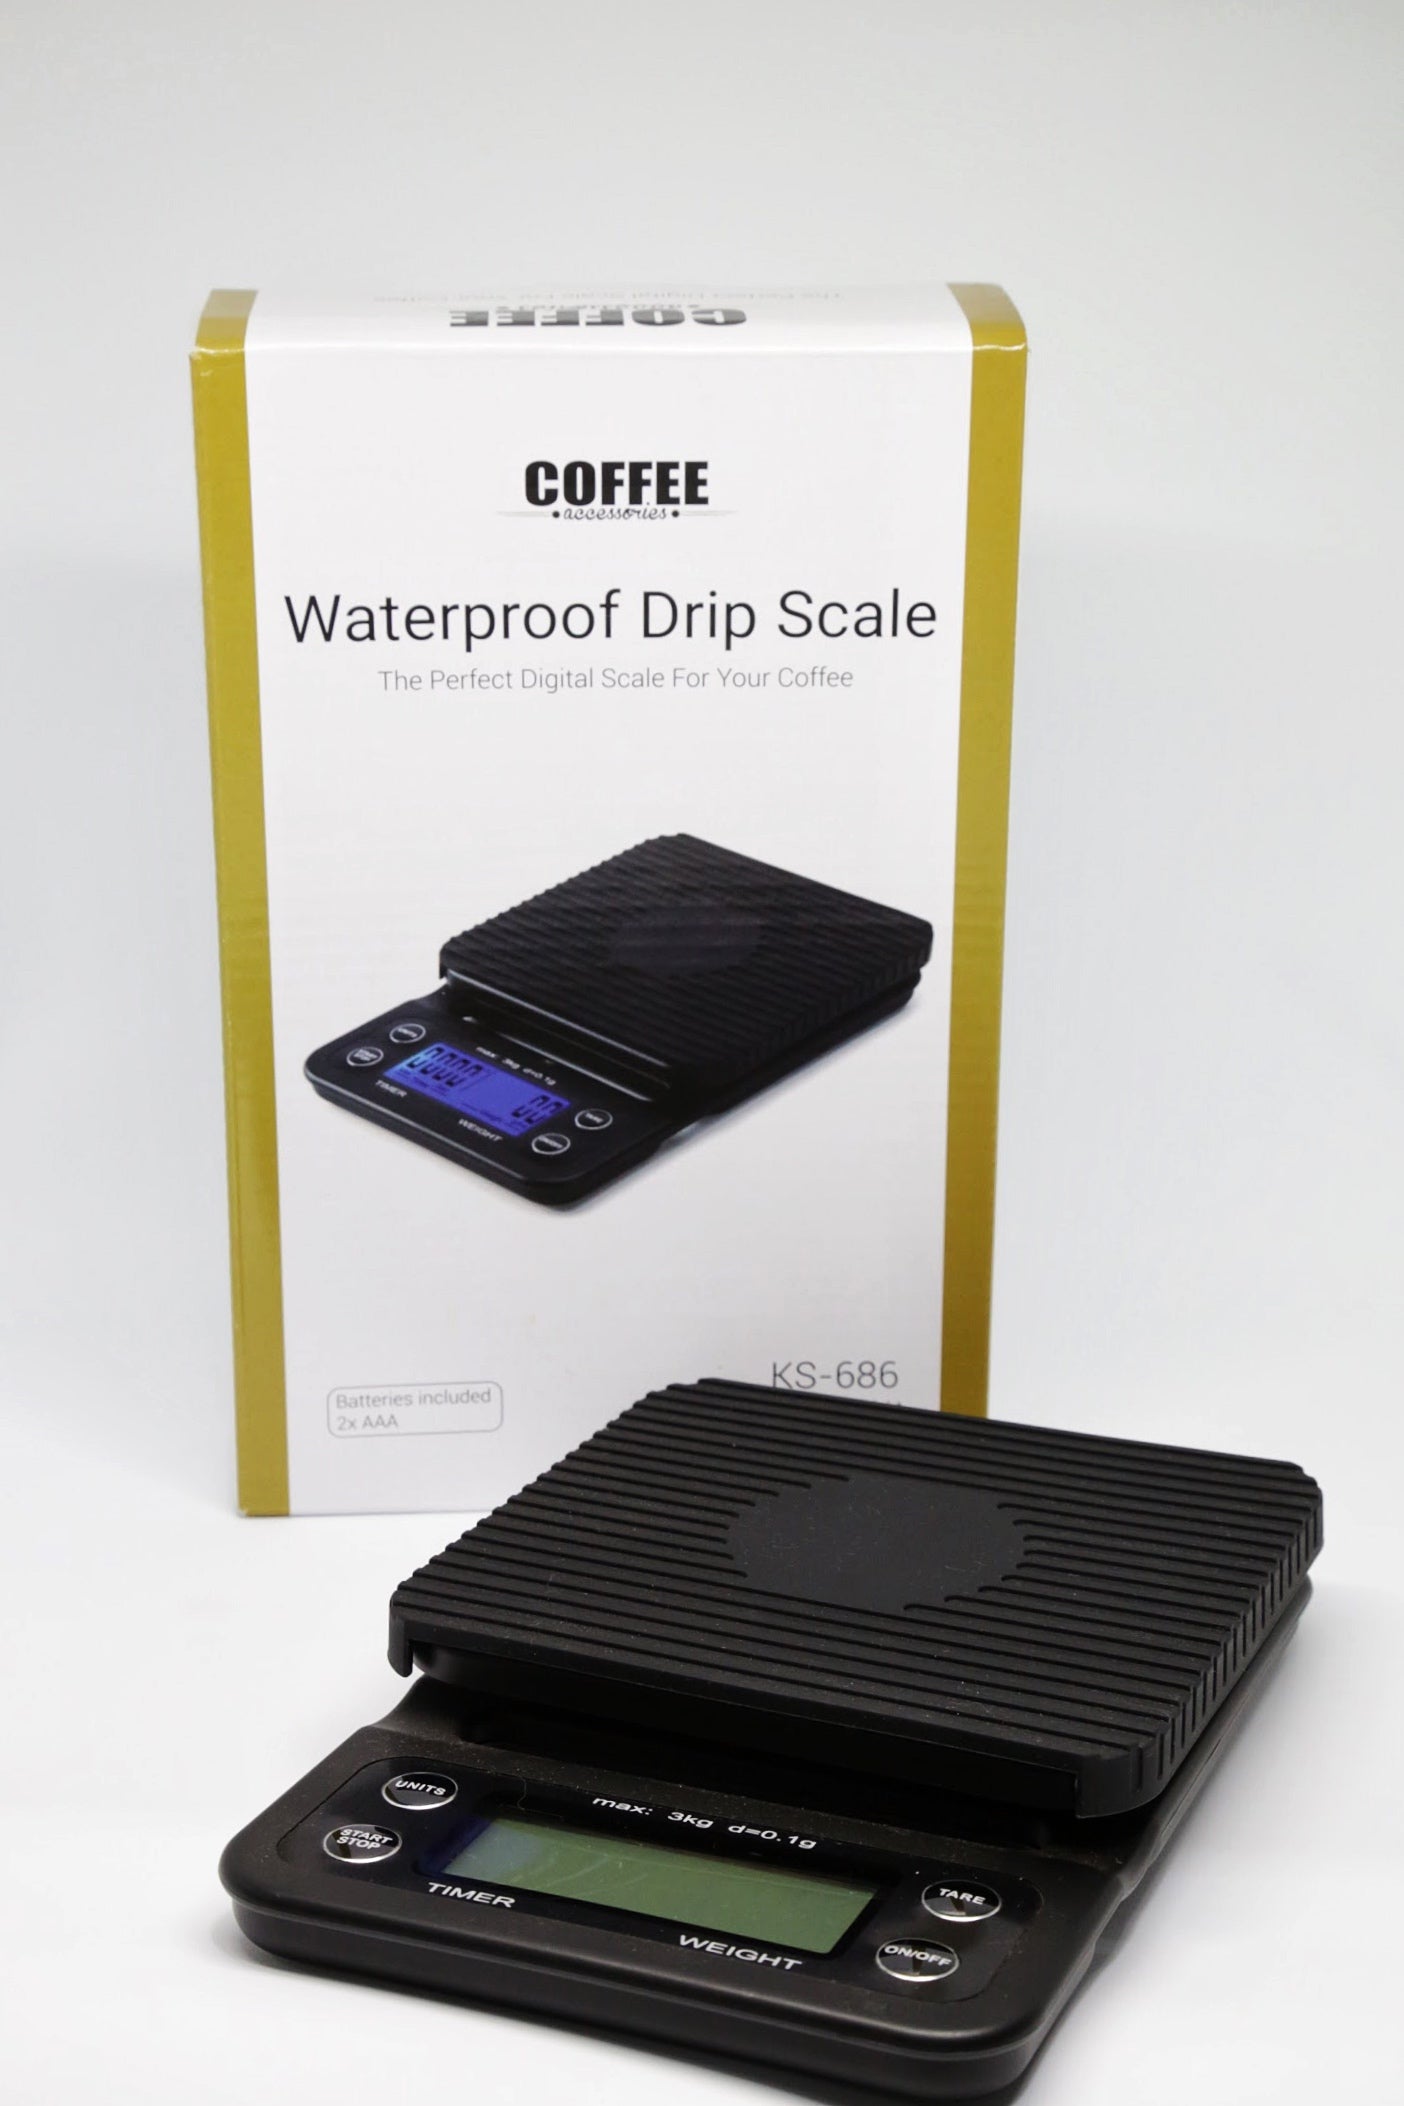 Waterproof Drip scale